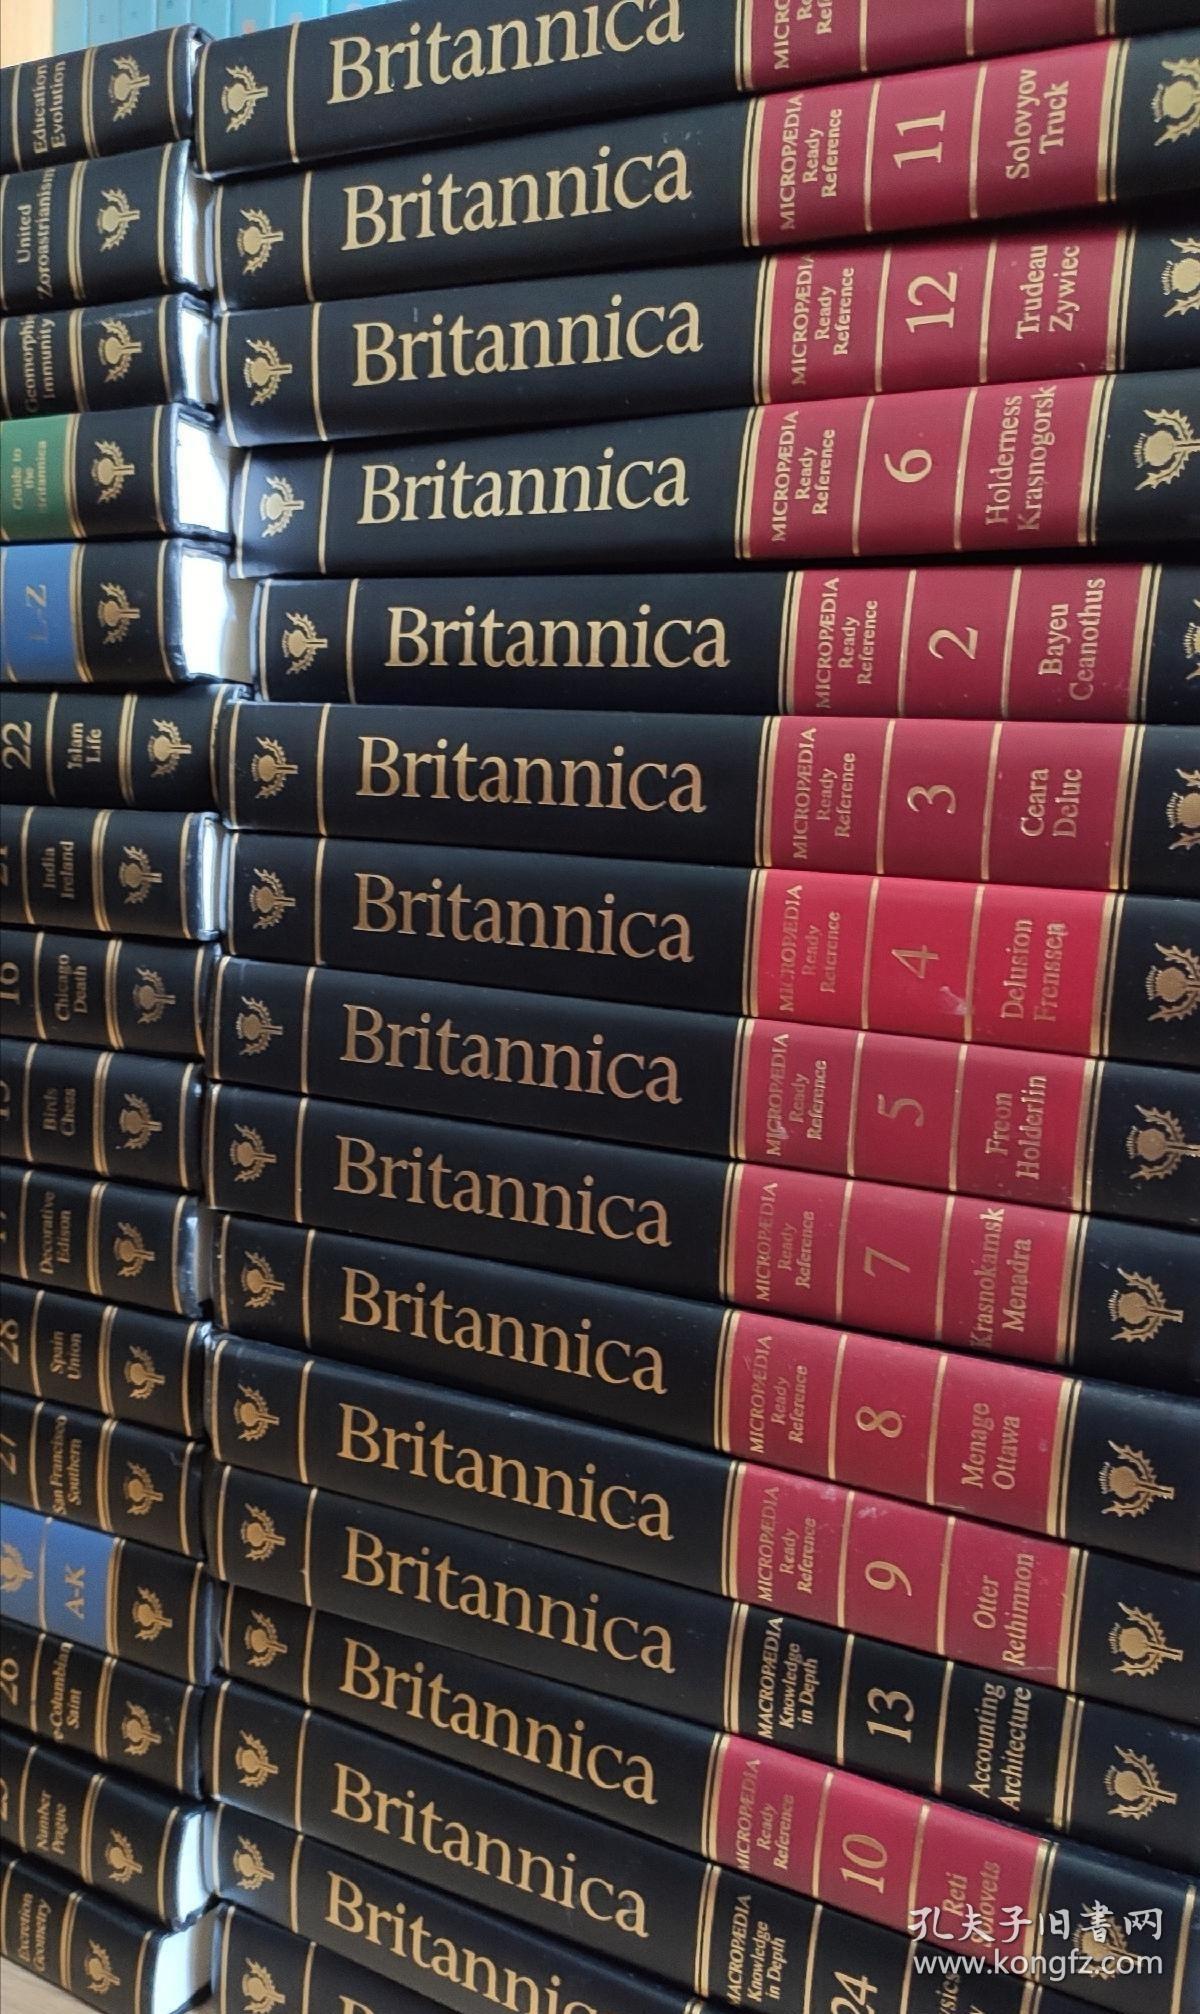 大英百科全书 Encyclopaedia Britannica 32册全套 1992年皮面收藏版竹节书脊书顶刷金限量编号